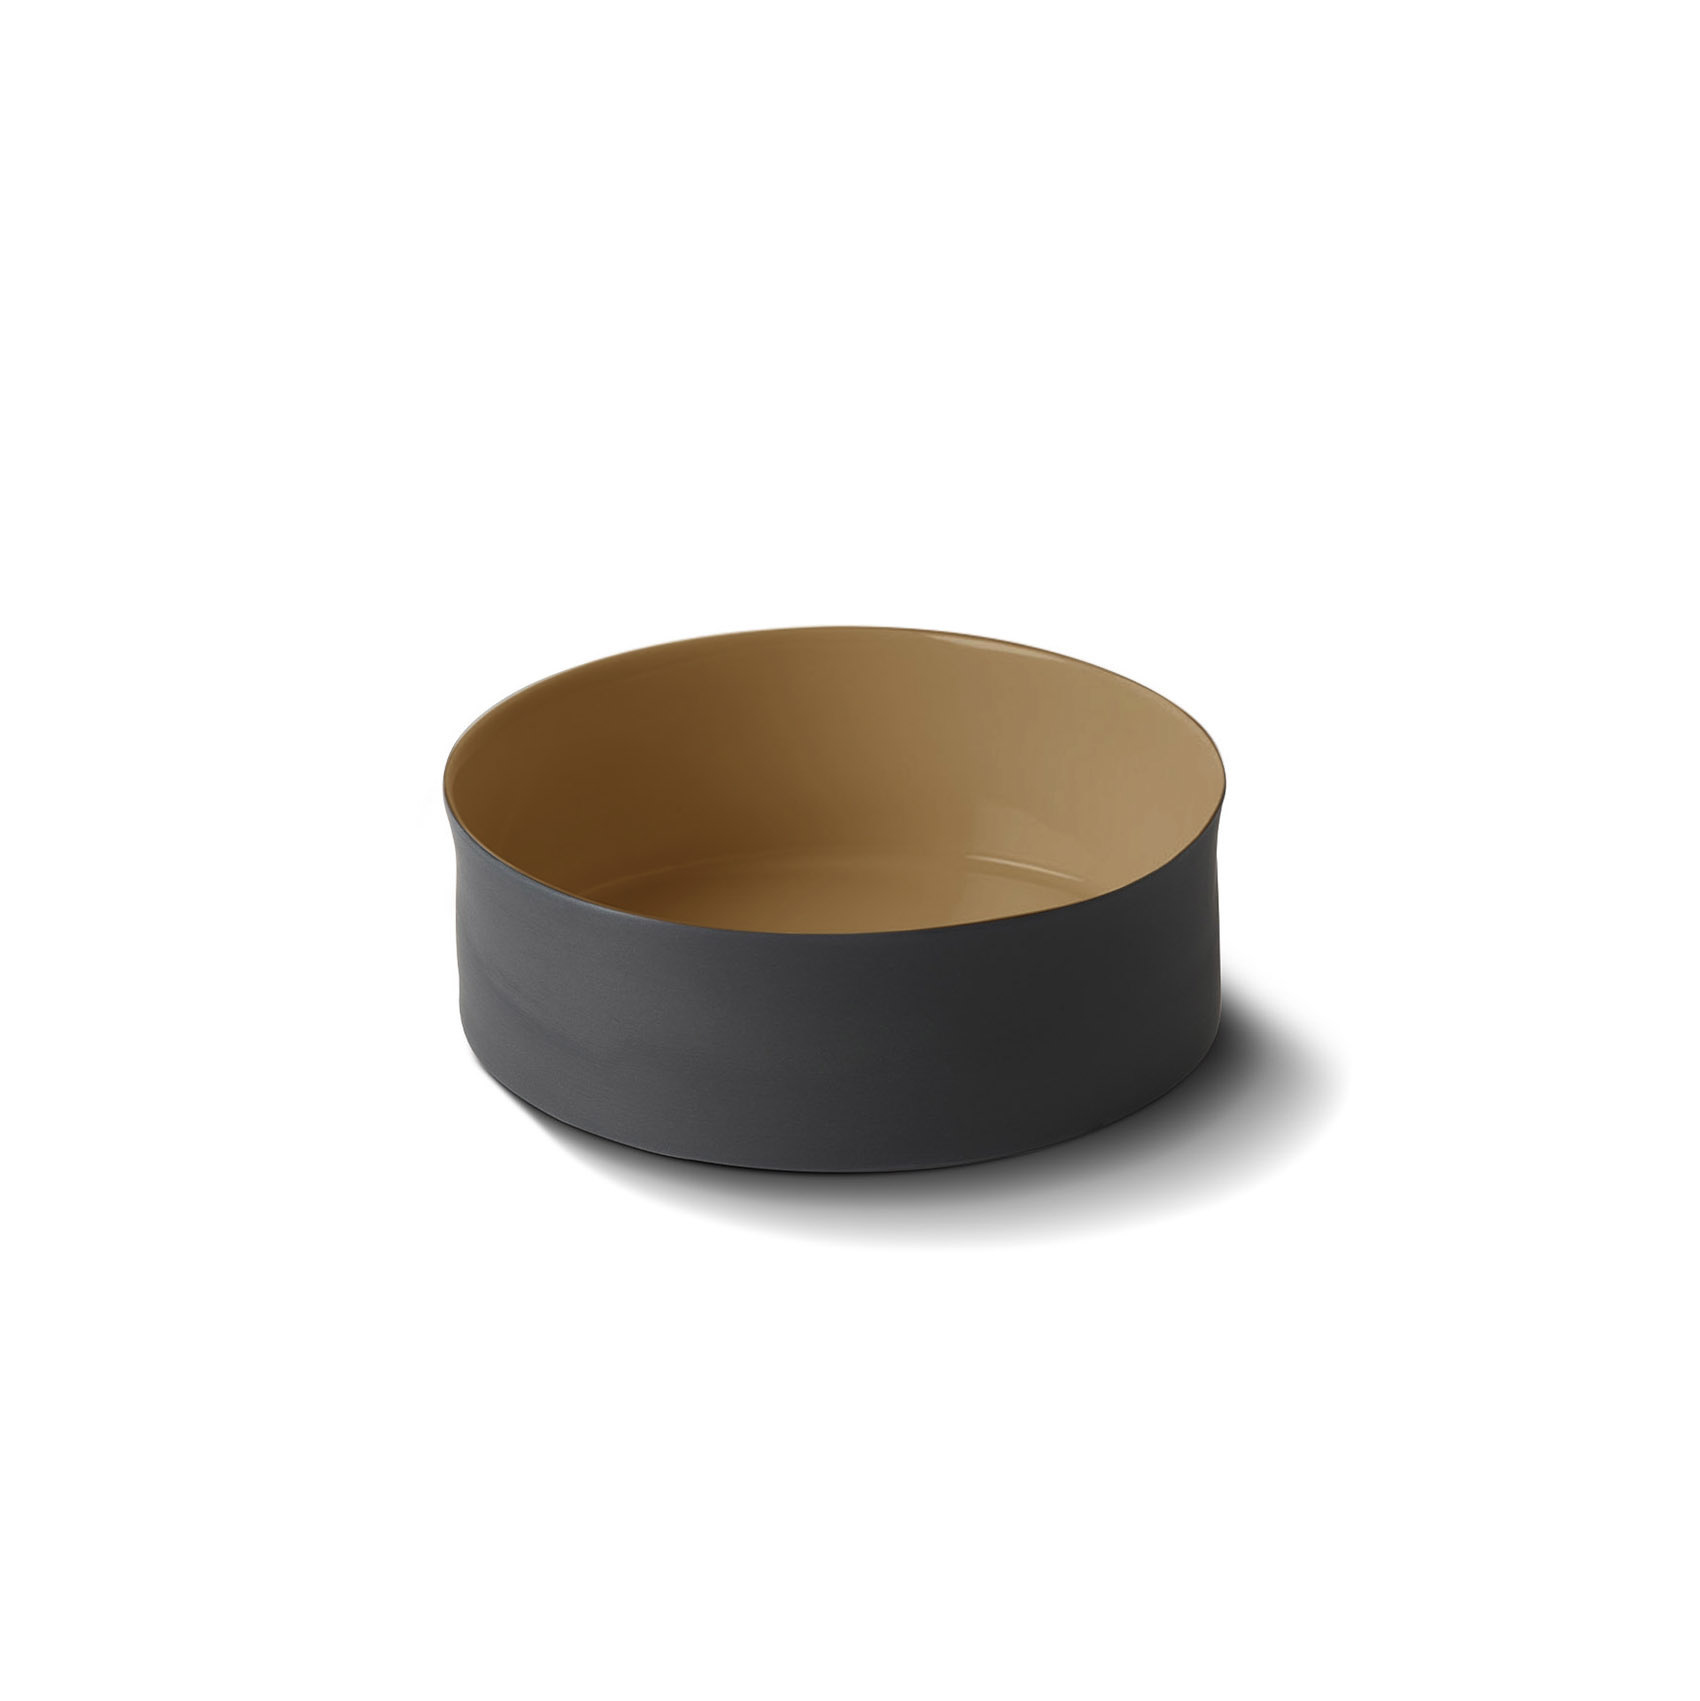 Cylinder Bowl Porcelain - Black&Straw- Esma Dereboy-3